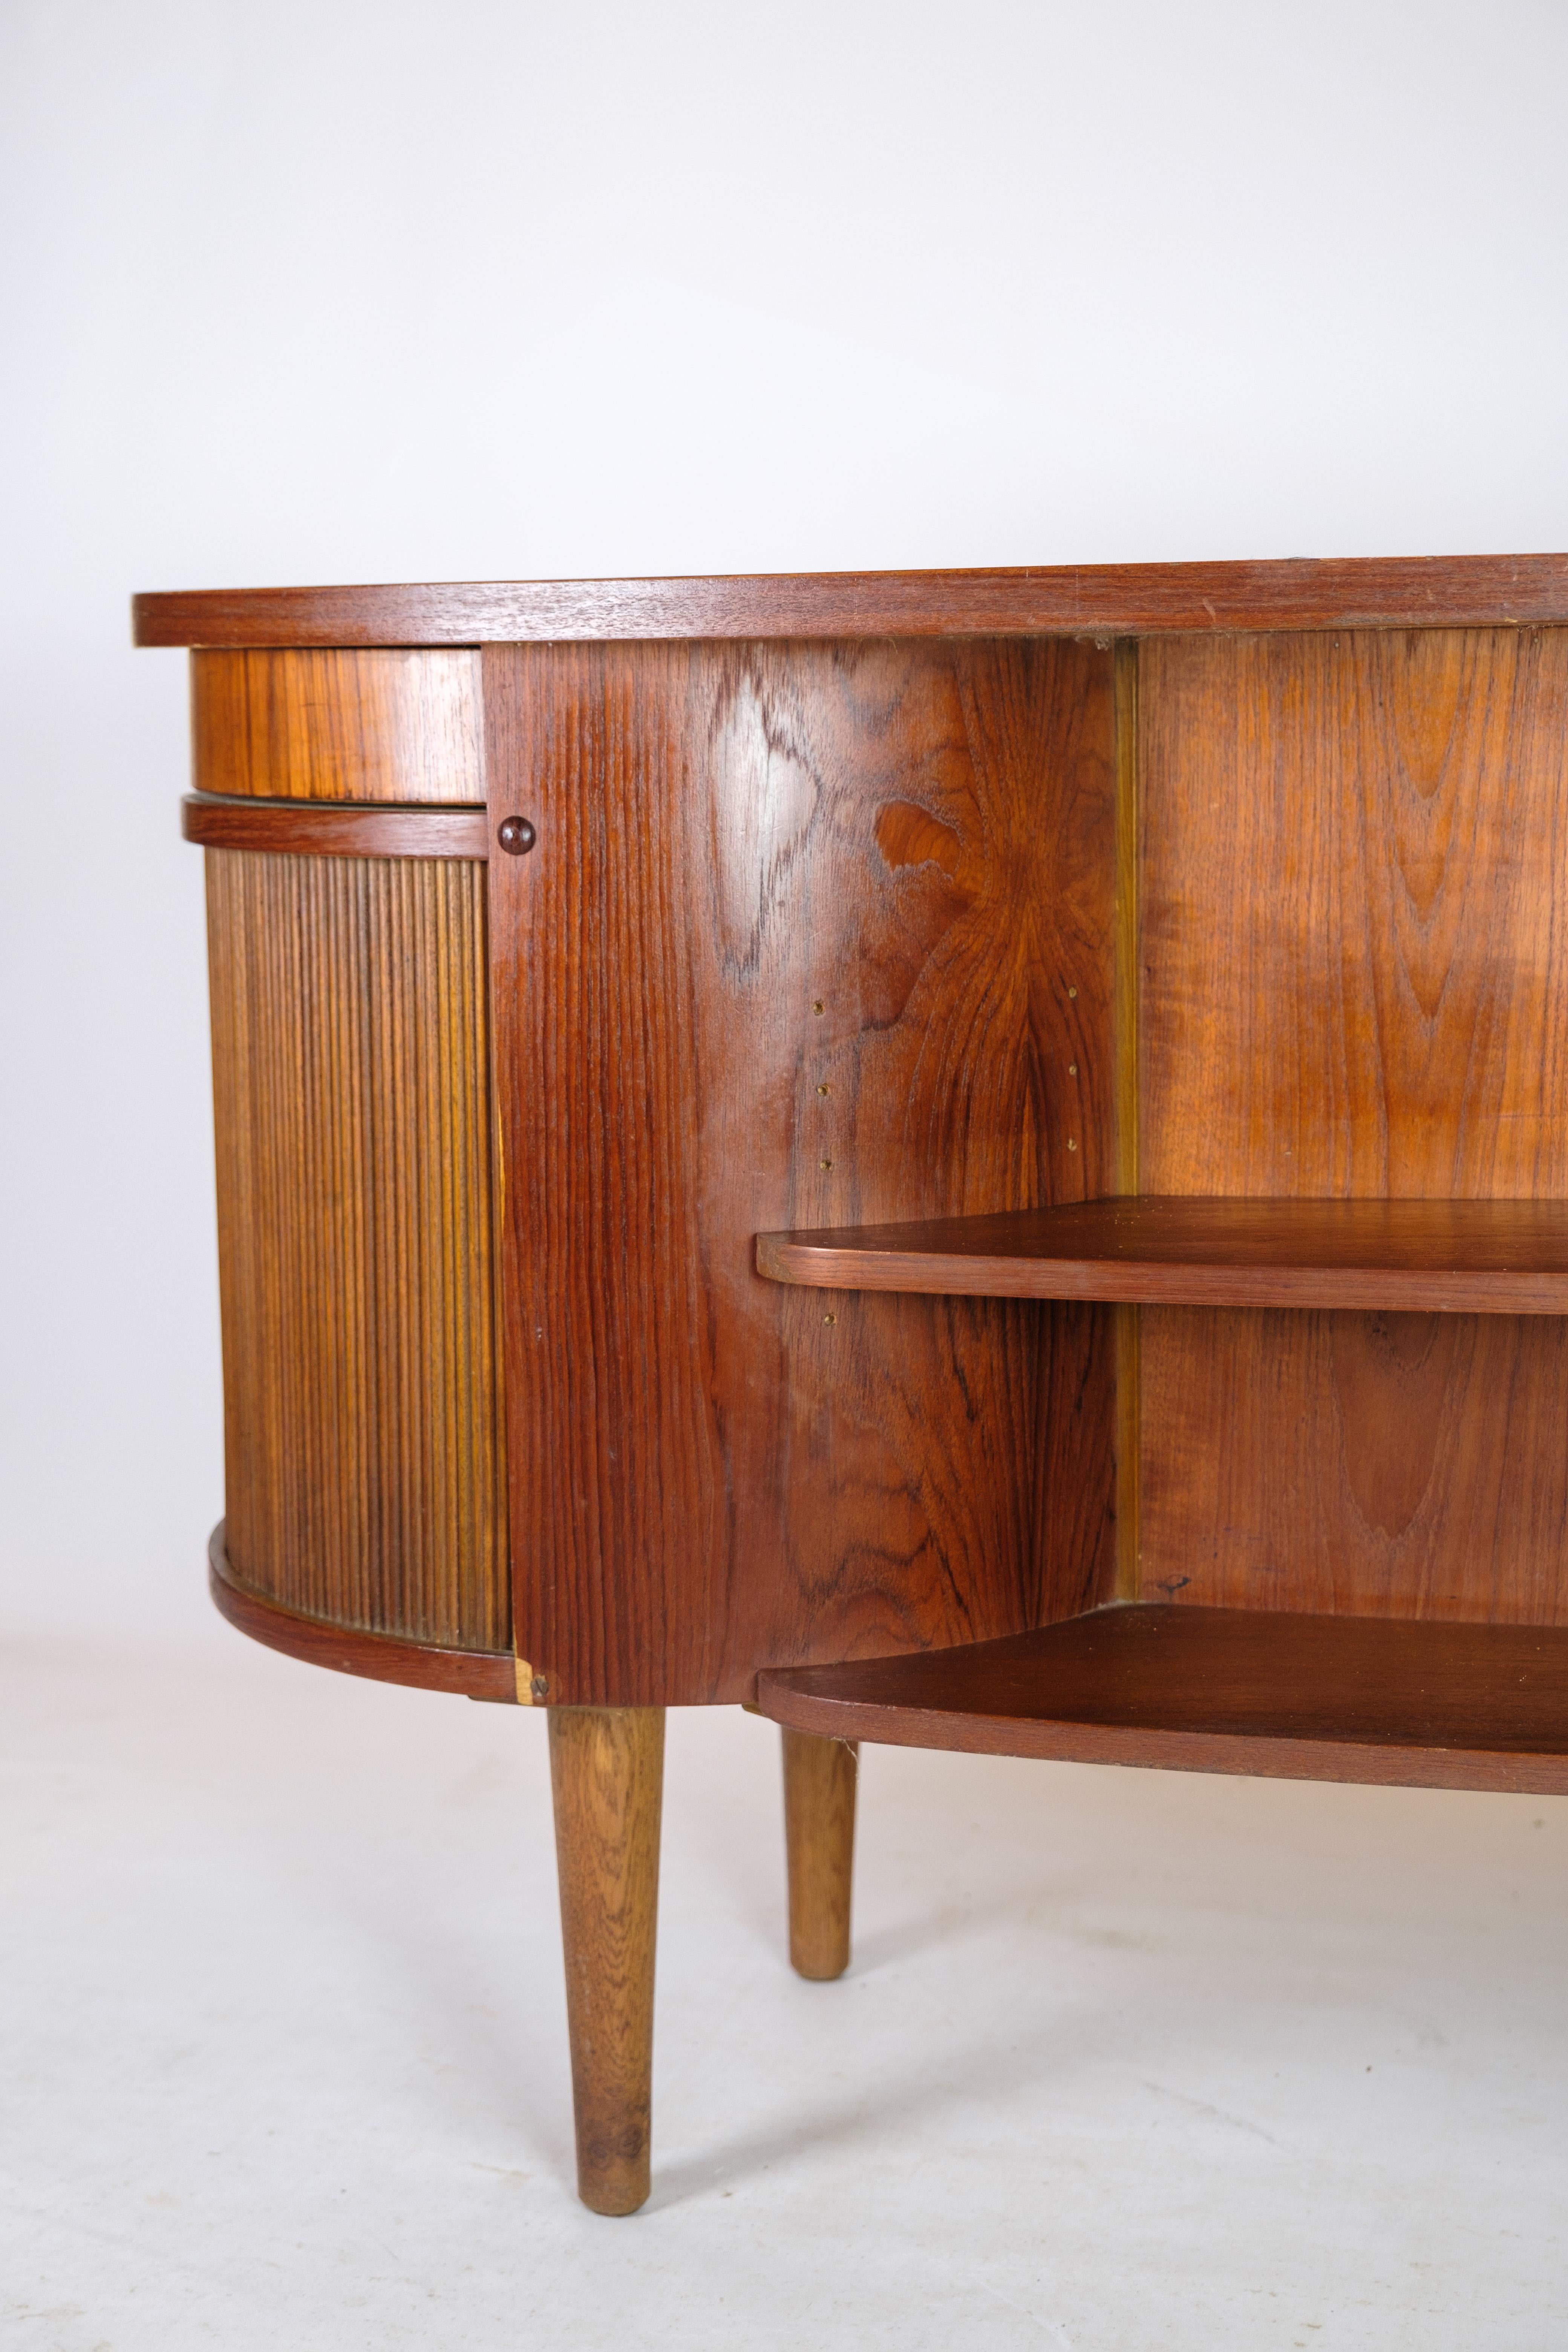 Desk in Teak wood model 54 by Kai Kristiansen and Feldballes furniture from 1954 For Sale 3